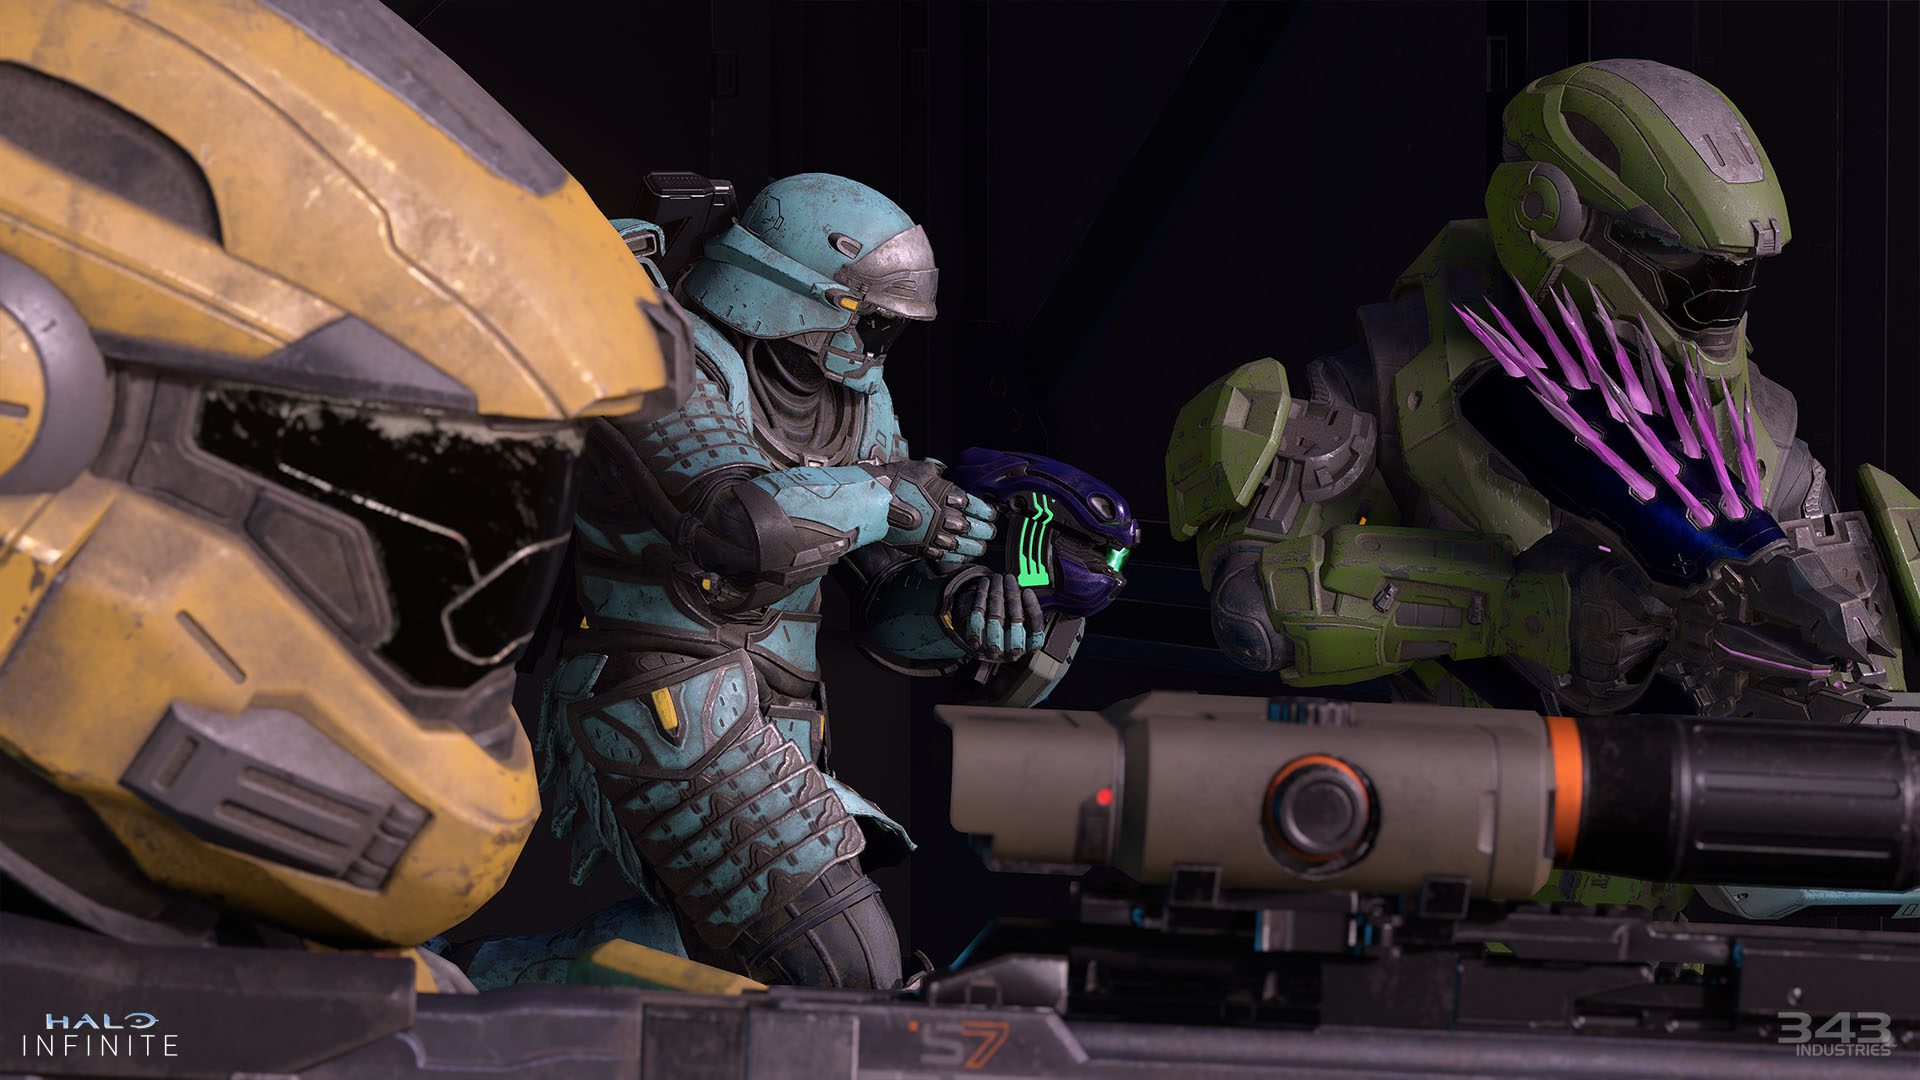 Zrzut ekranu Halo Infinite Action przedstawiający kilka rdzeni pancerza Spartan ze skórkami kadetów